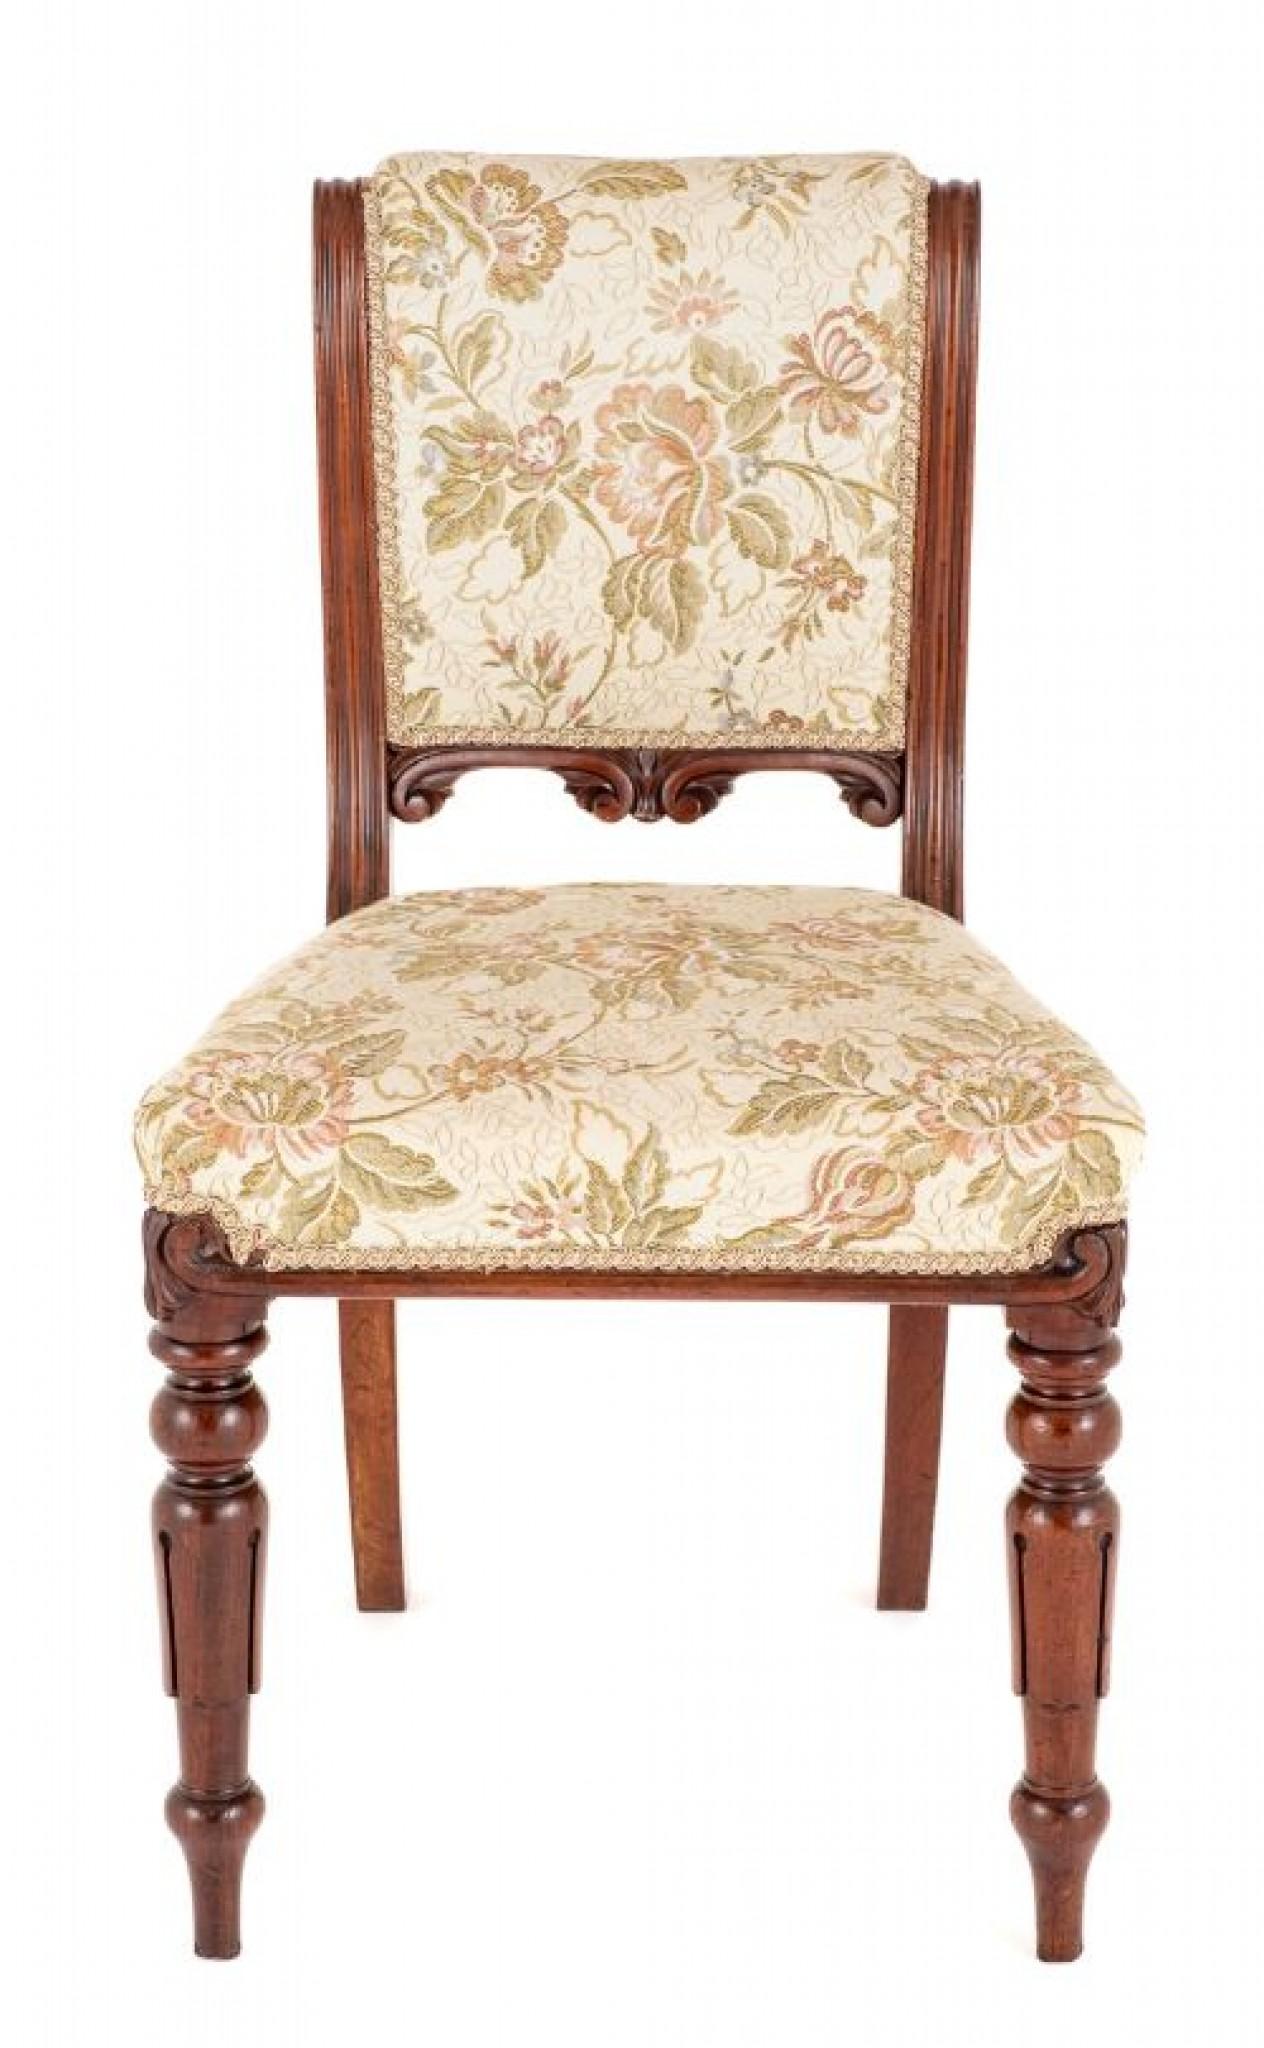 Ensemble de 8 chaises de salle à manger William IV en acajou.
19ème siècle
Ces chaises reposent sur des pieds avant tulipes tournés et sculptés, typiques de William IV, et des pieds arrière en sabre.
Les chaises sont dotées d'un siège et d'un